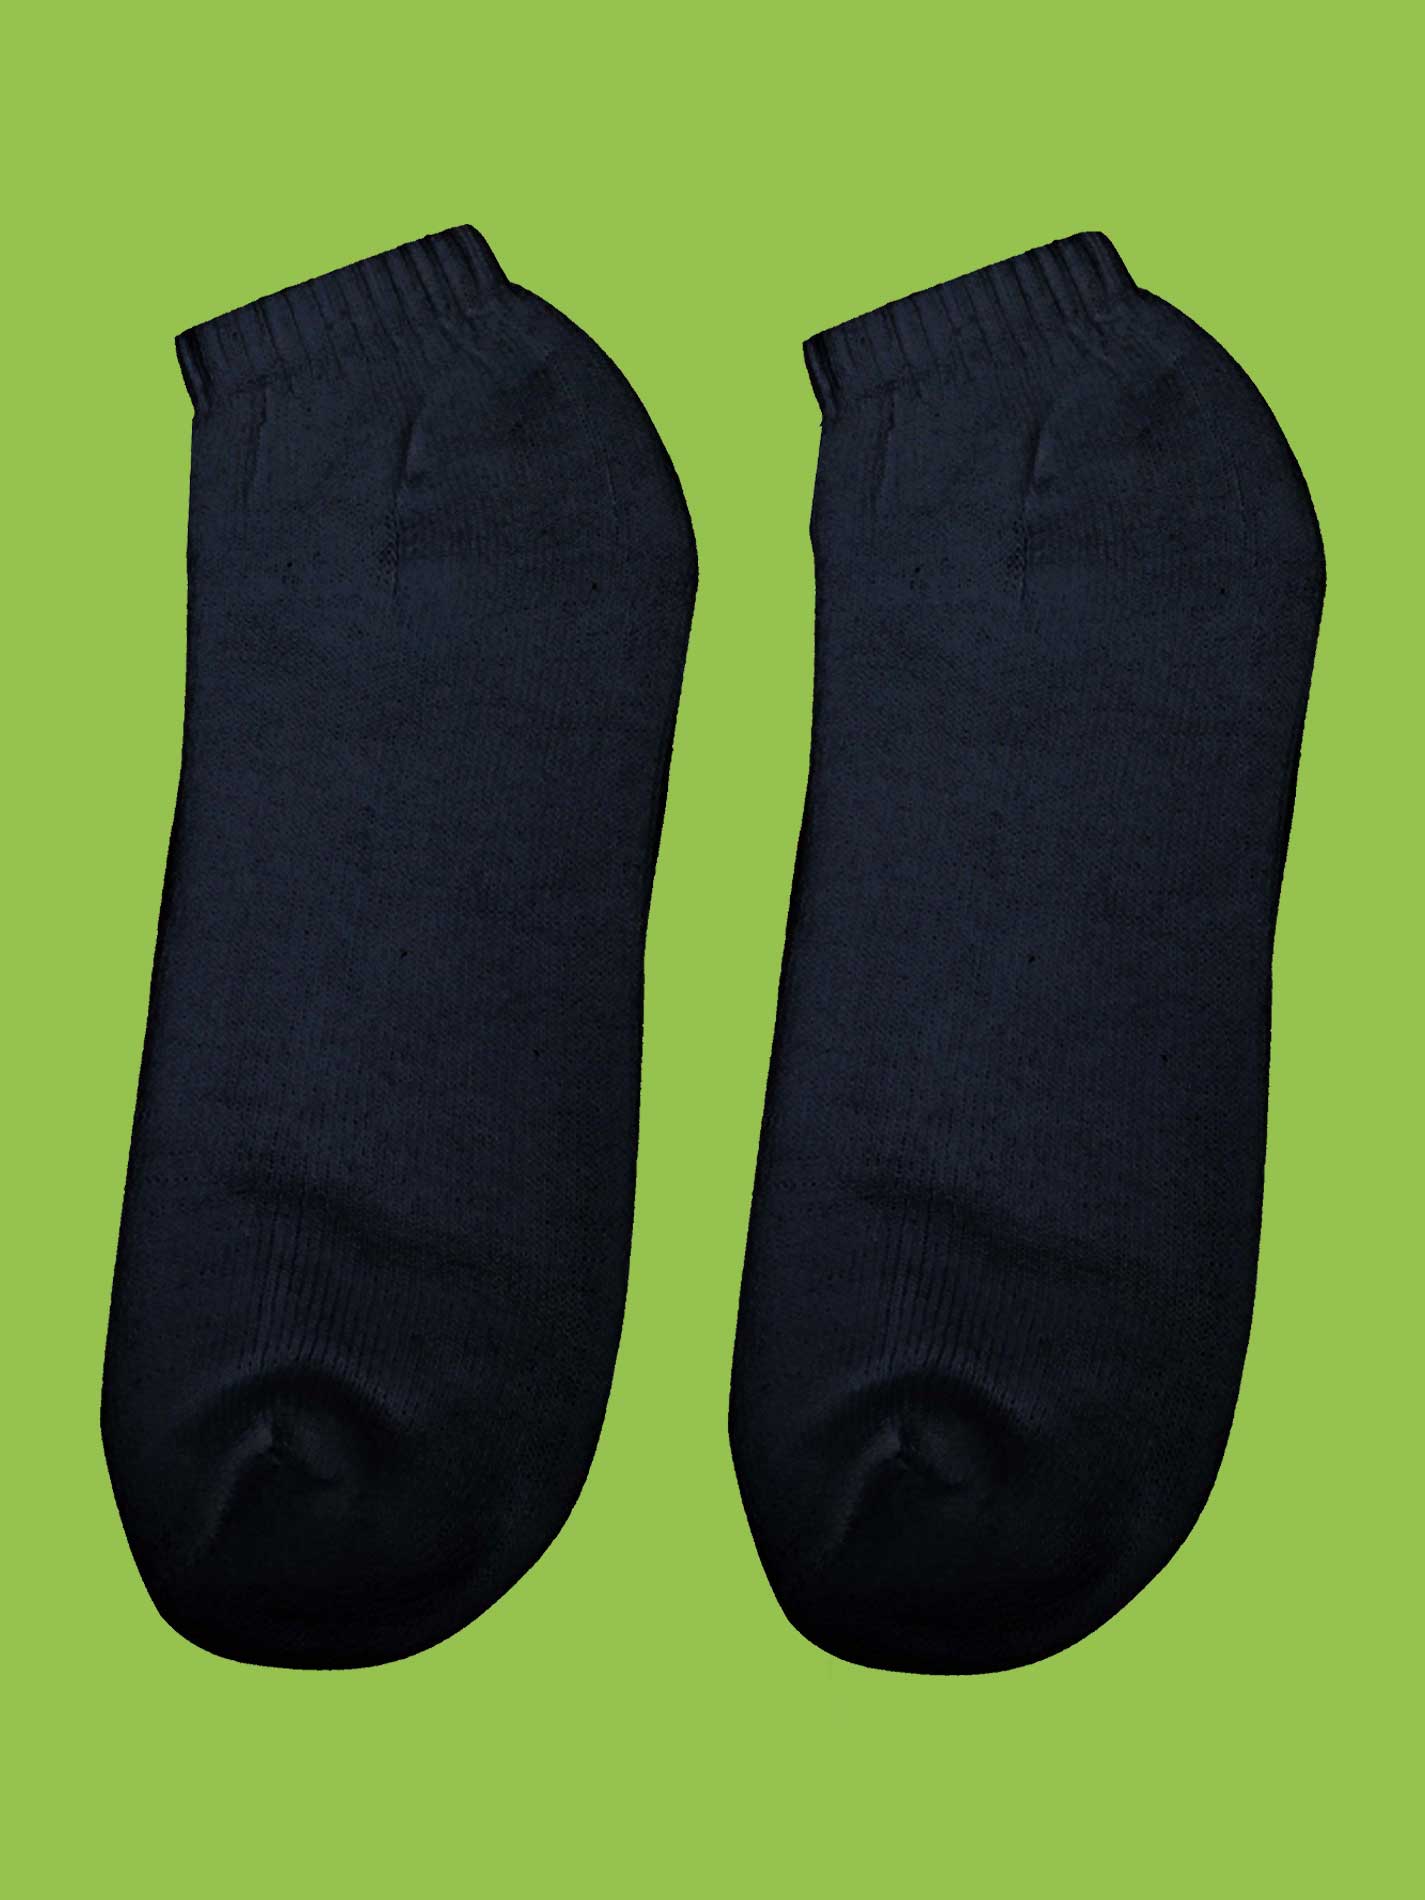 Style Wear Socks Low Cut